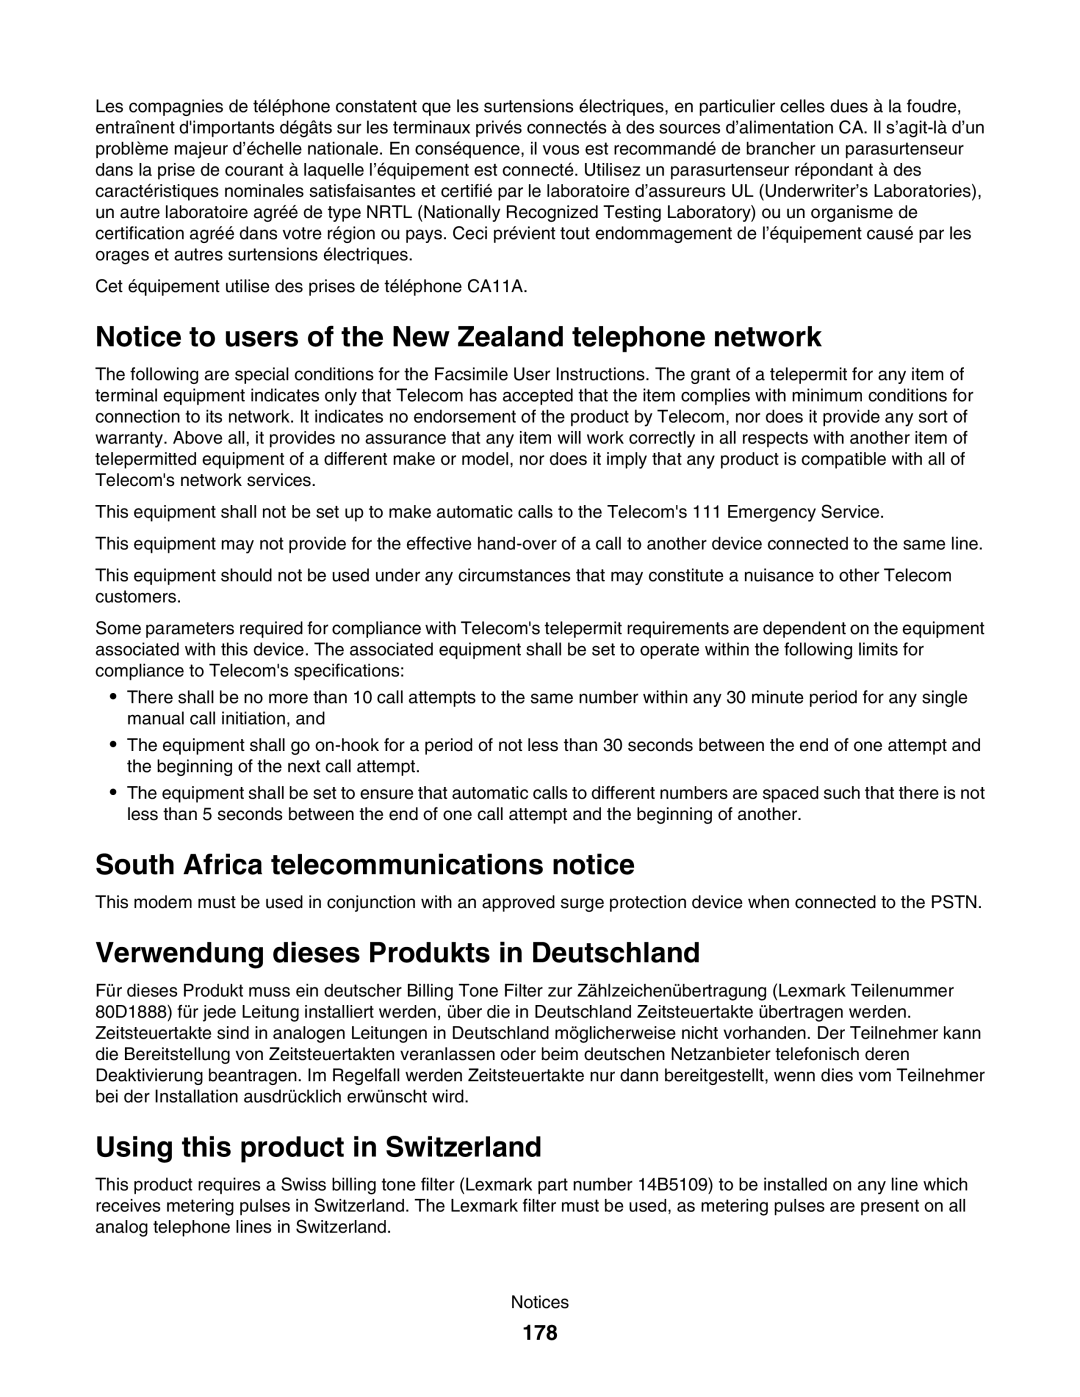 Lexmark 5000 Series manual South Africa telecommunications notice, Verwendung dieses Produkts in Deutschland, 178 